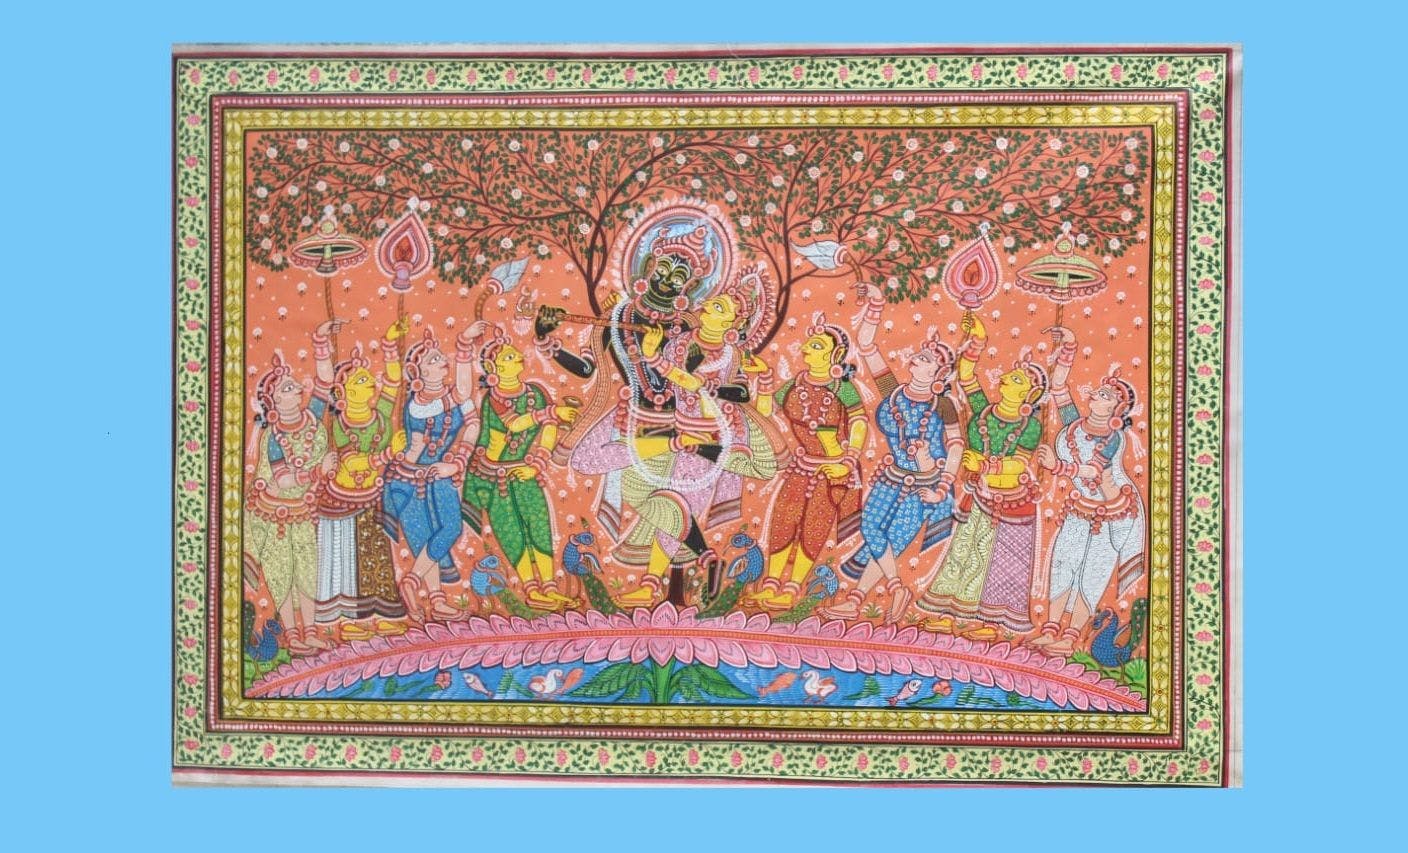 Pattachitra depicting Radha Krishna